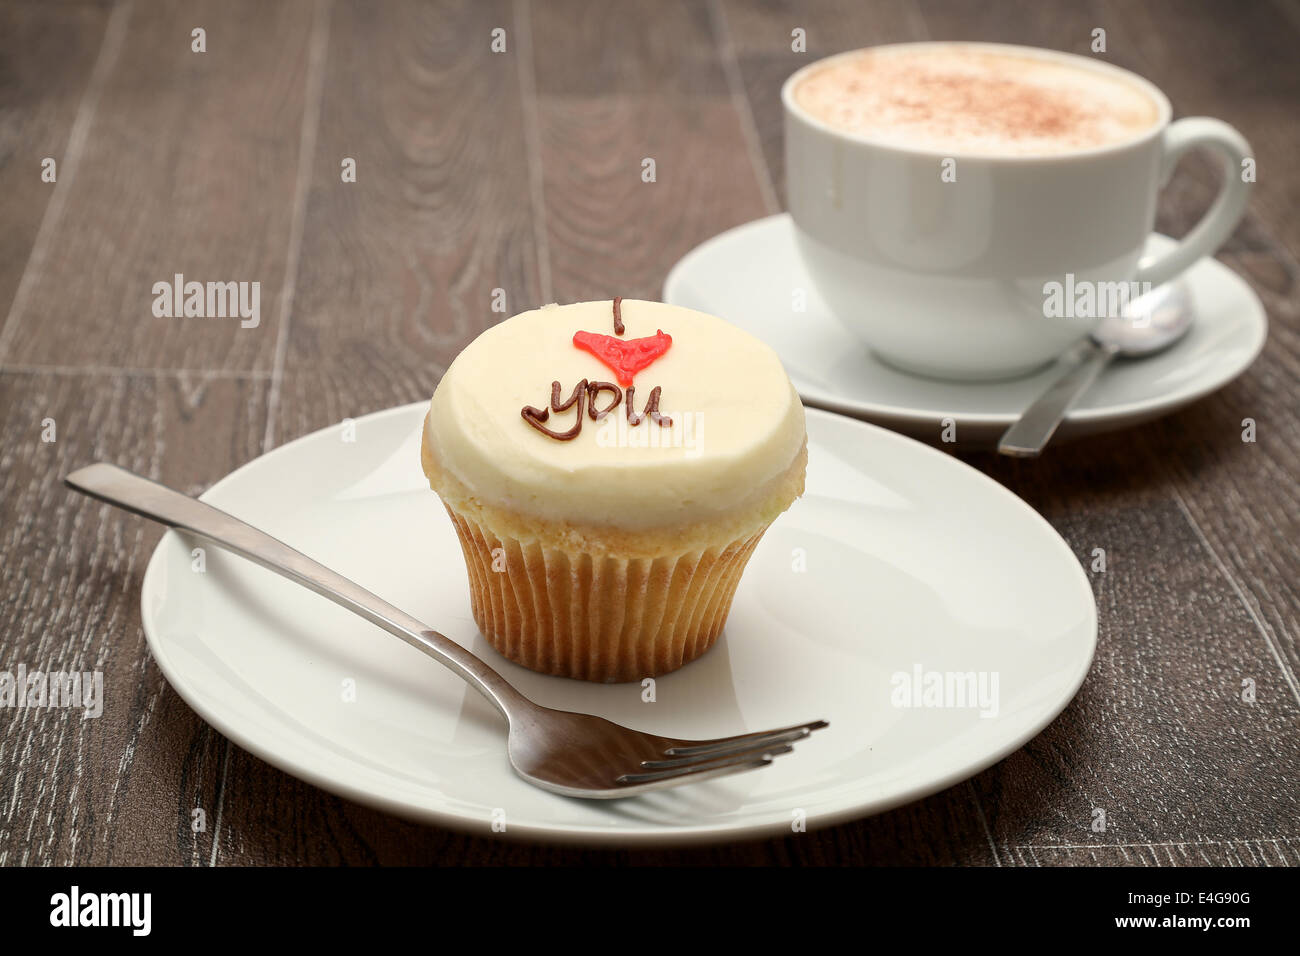 Un petit gâteau recouvert de glaçage buttercream avec le message "I love you" , servi avec un cappuccino, studio shot Banque D'Images